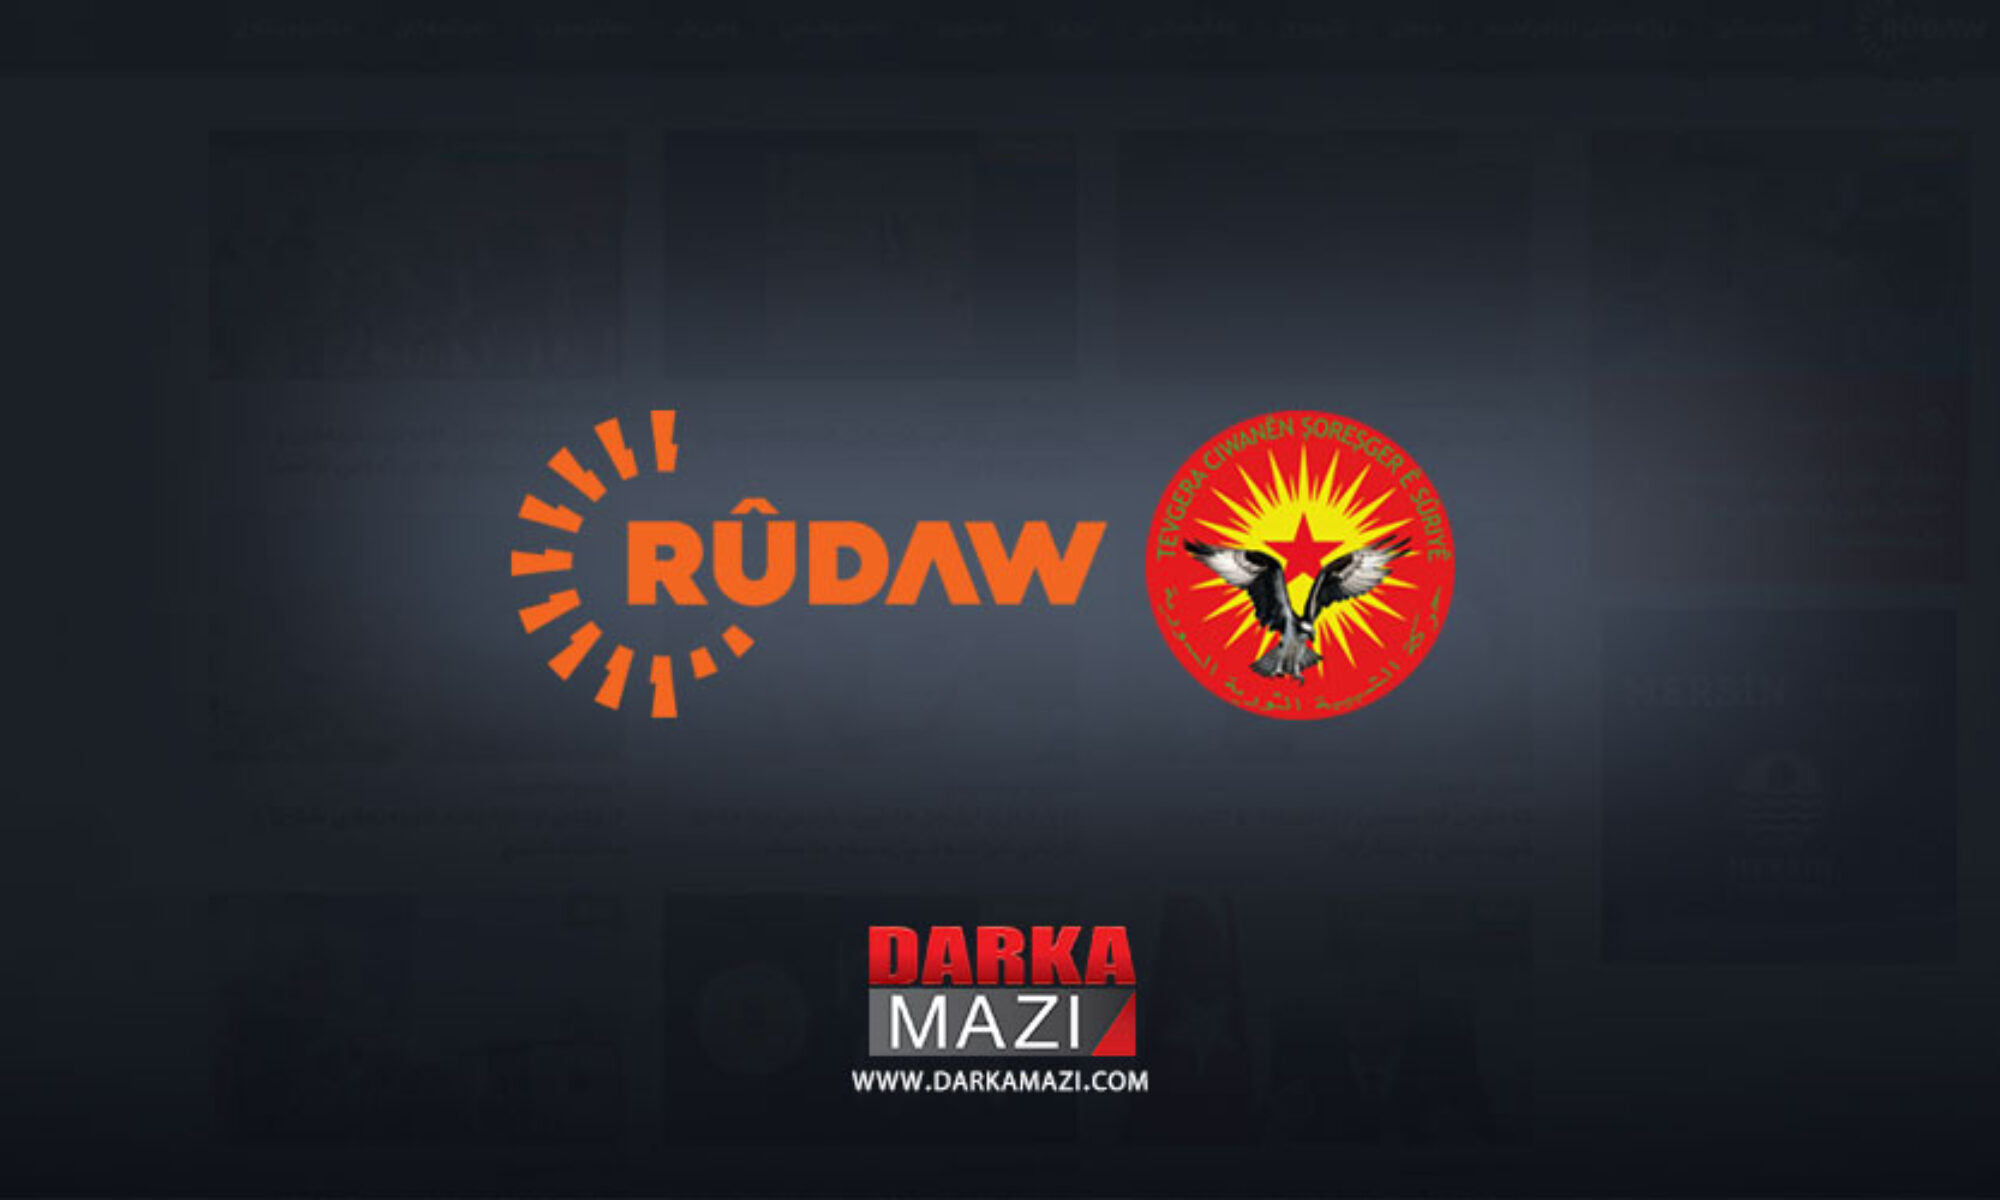 Rudaw’ın Qamışlo’daki ofisine saldırı genel bir konseptin parçası mı, işler nerden koordine ediliyor? ENKS, PKK; KCK; Cıwanen Şoreşger,